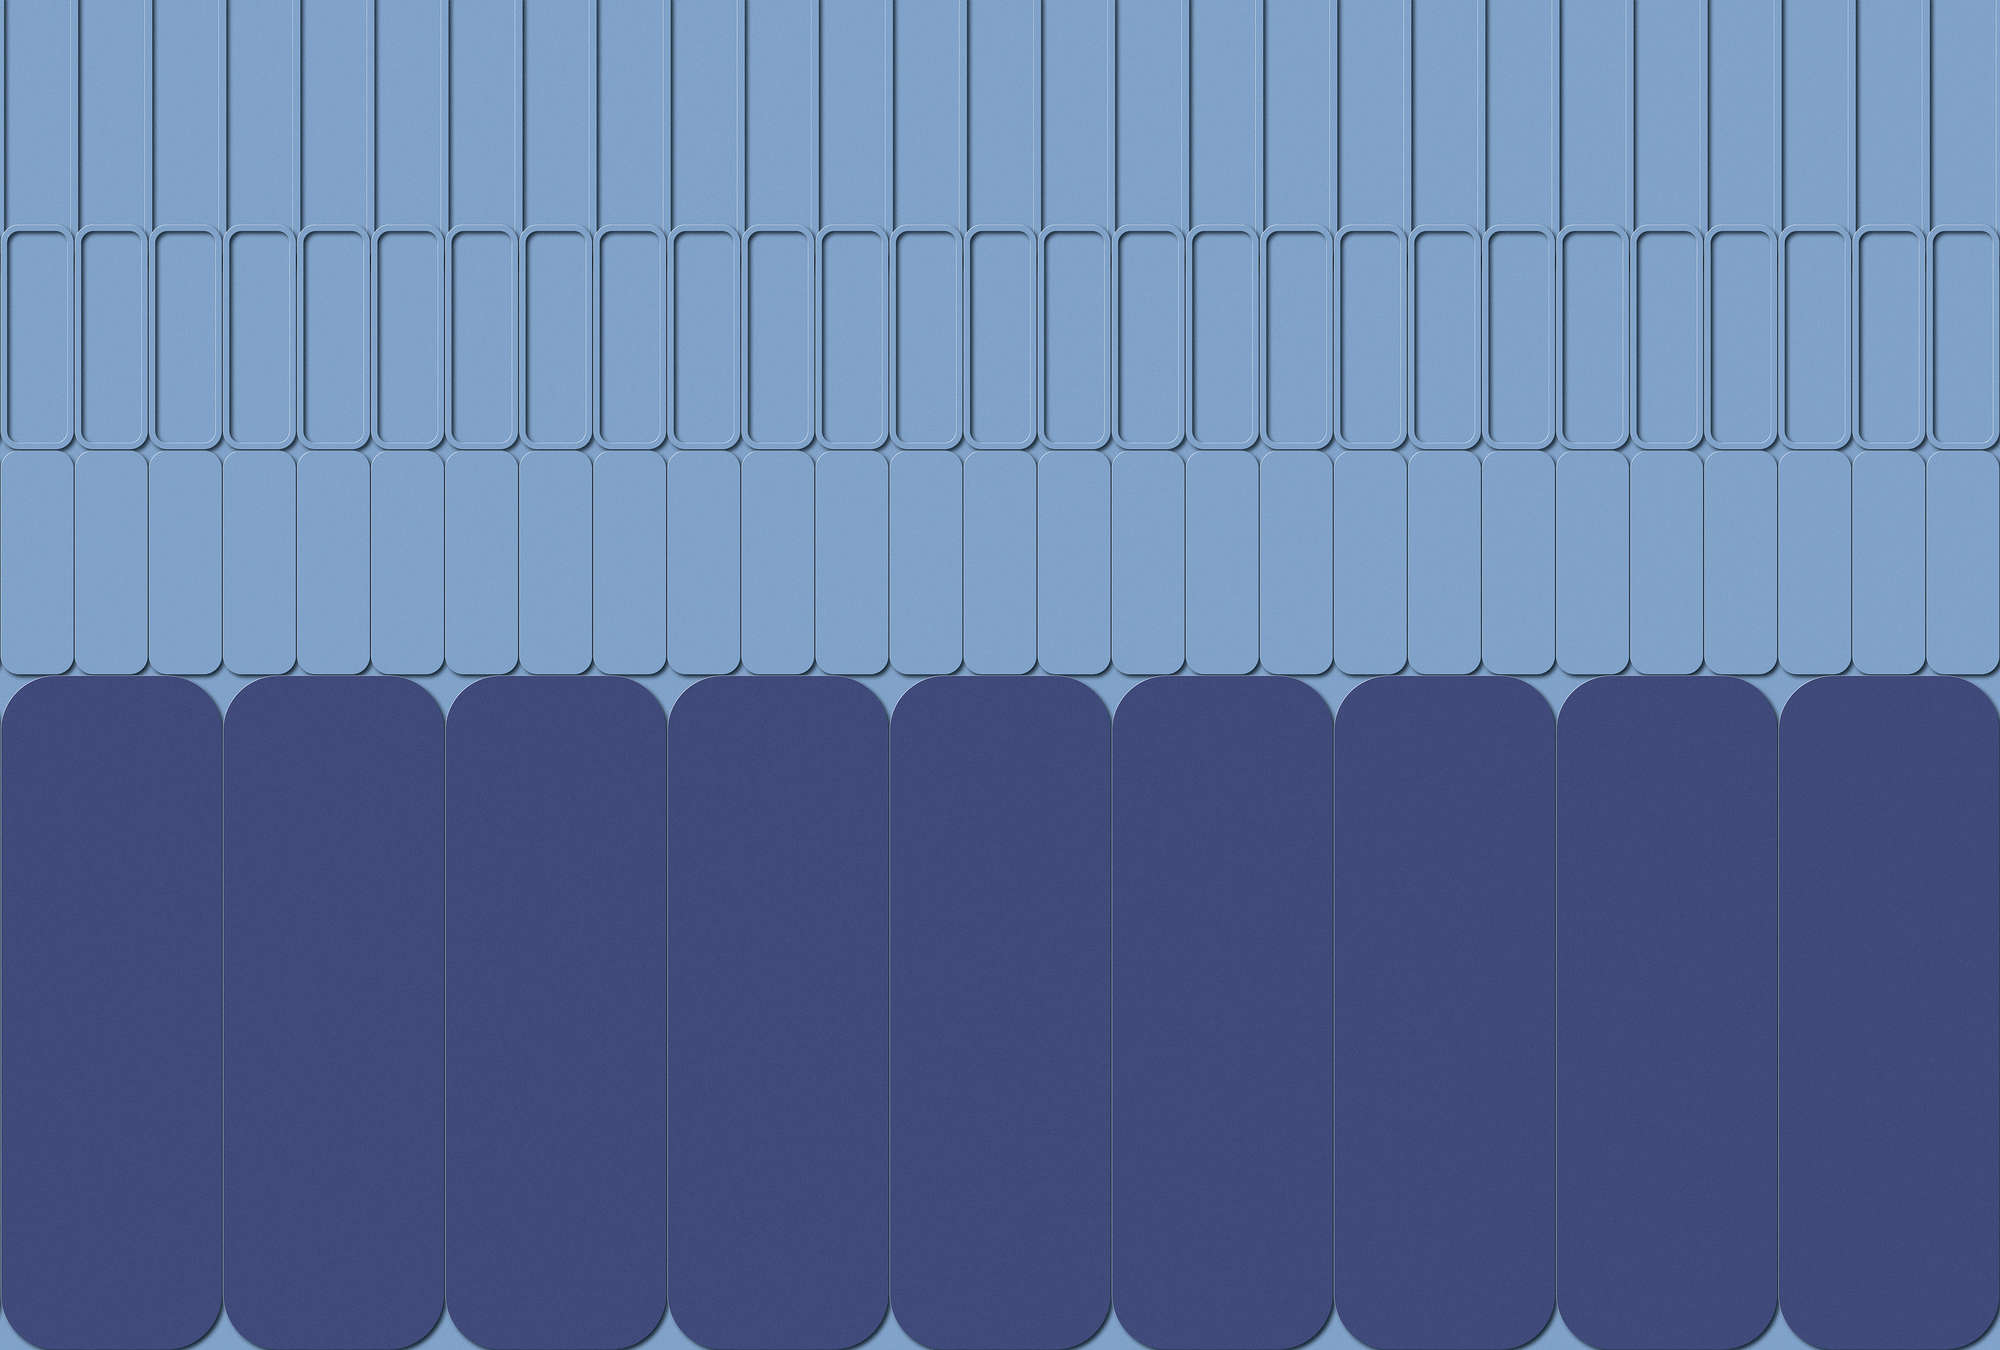             Metro 1 - Grafisch behangpapier blauw met toon-op-toon patroon
        